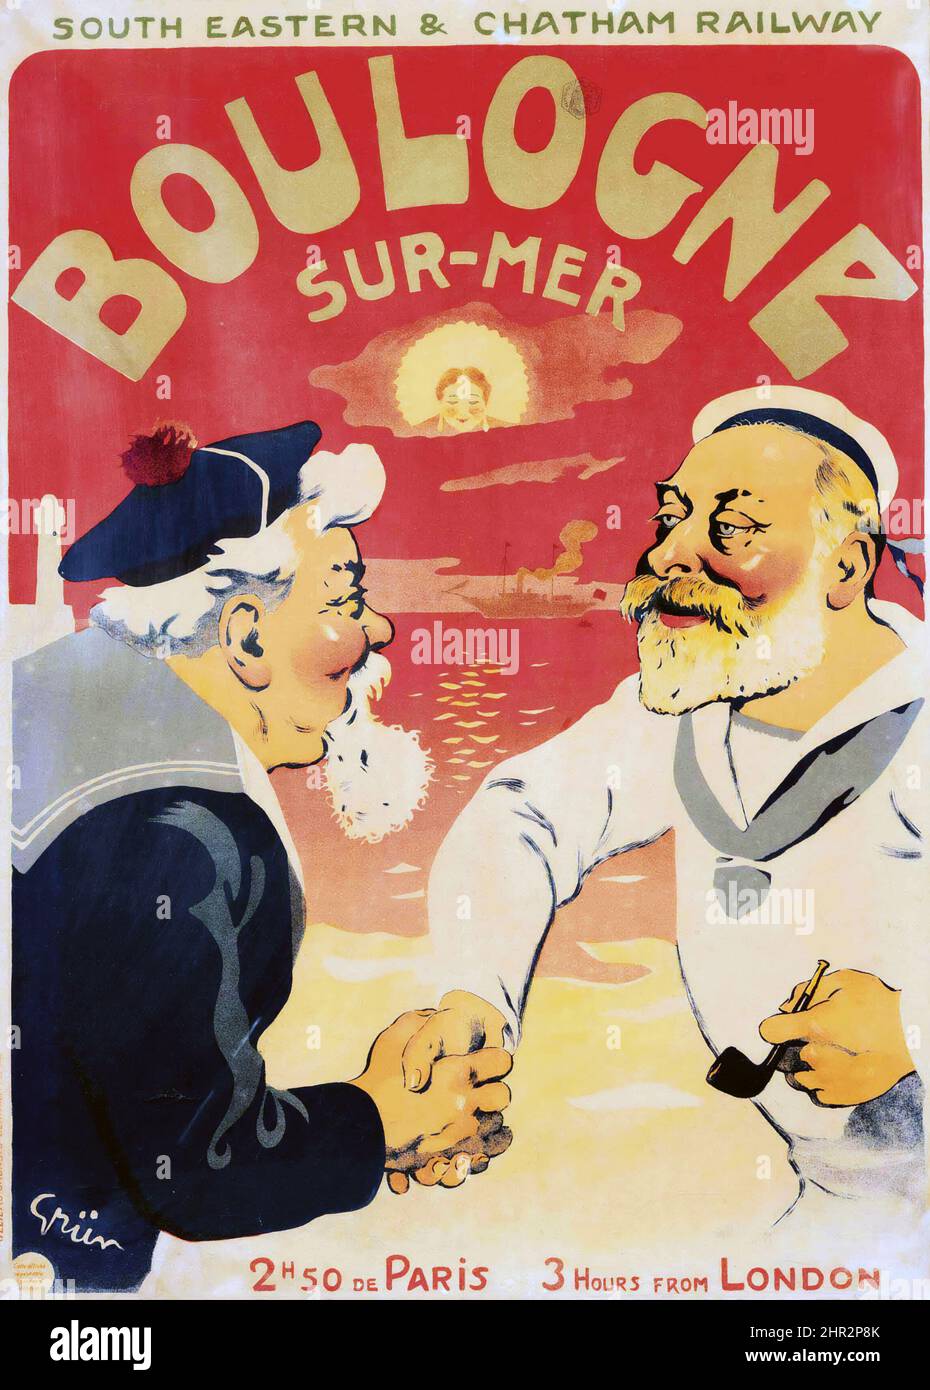 JULES ALEXANDRE GRÜN (1868-1934) Boulogne Sur-Mer - vintage advertisement poster feat. two men shaking hand. Belle époque poster. 1906. Stock Photo